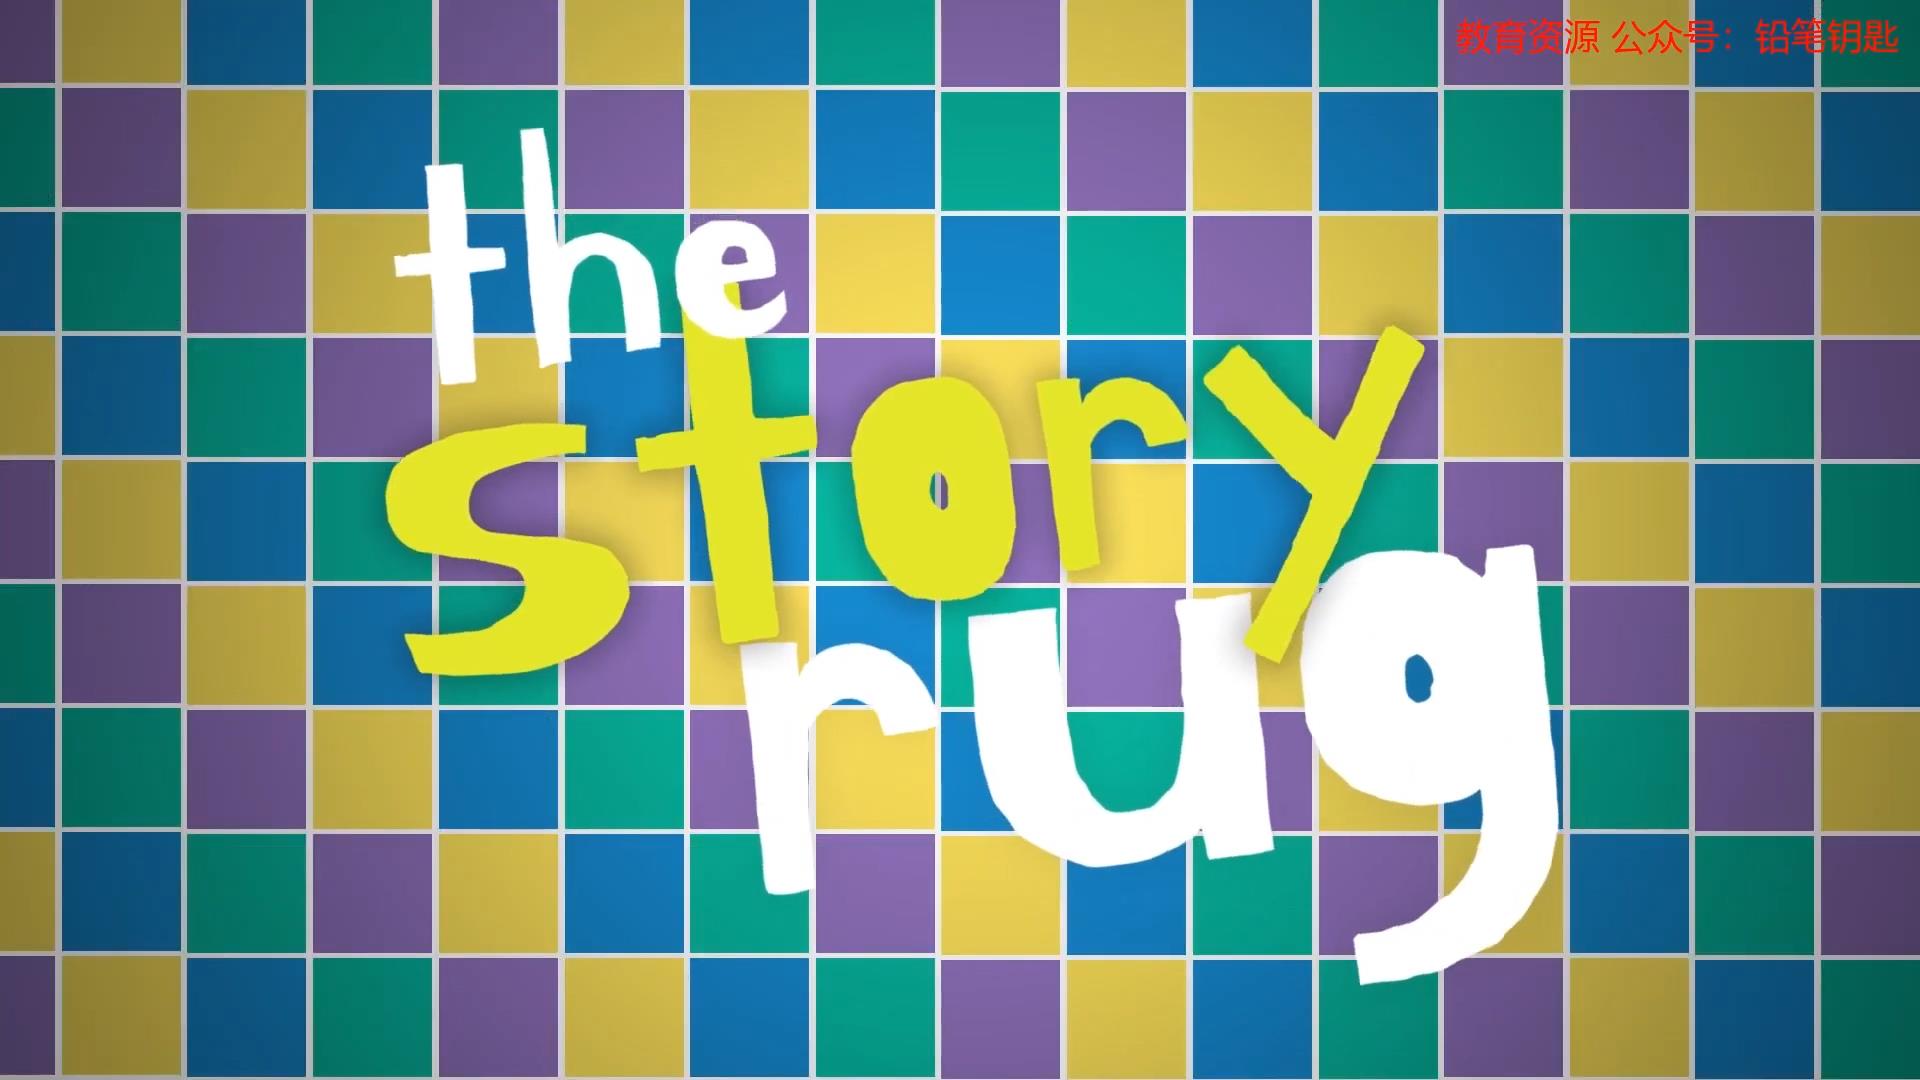 68个儿童英文绘本故事视频系列《The Story Rug》+外挂字幕，让孩子自己主动爱上学习夸克网盘分享